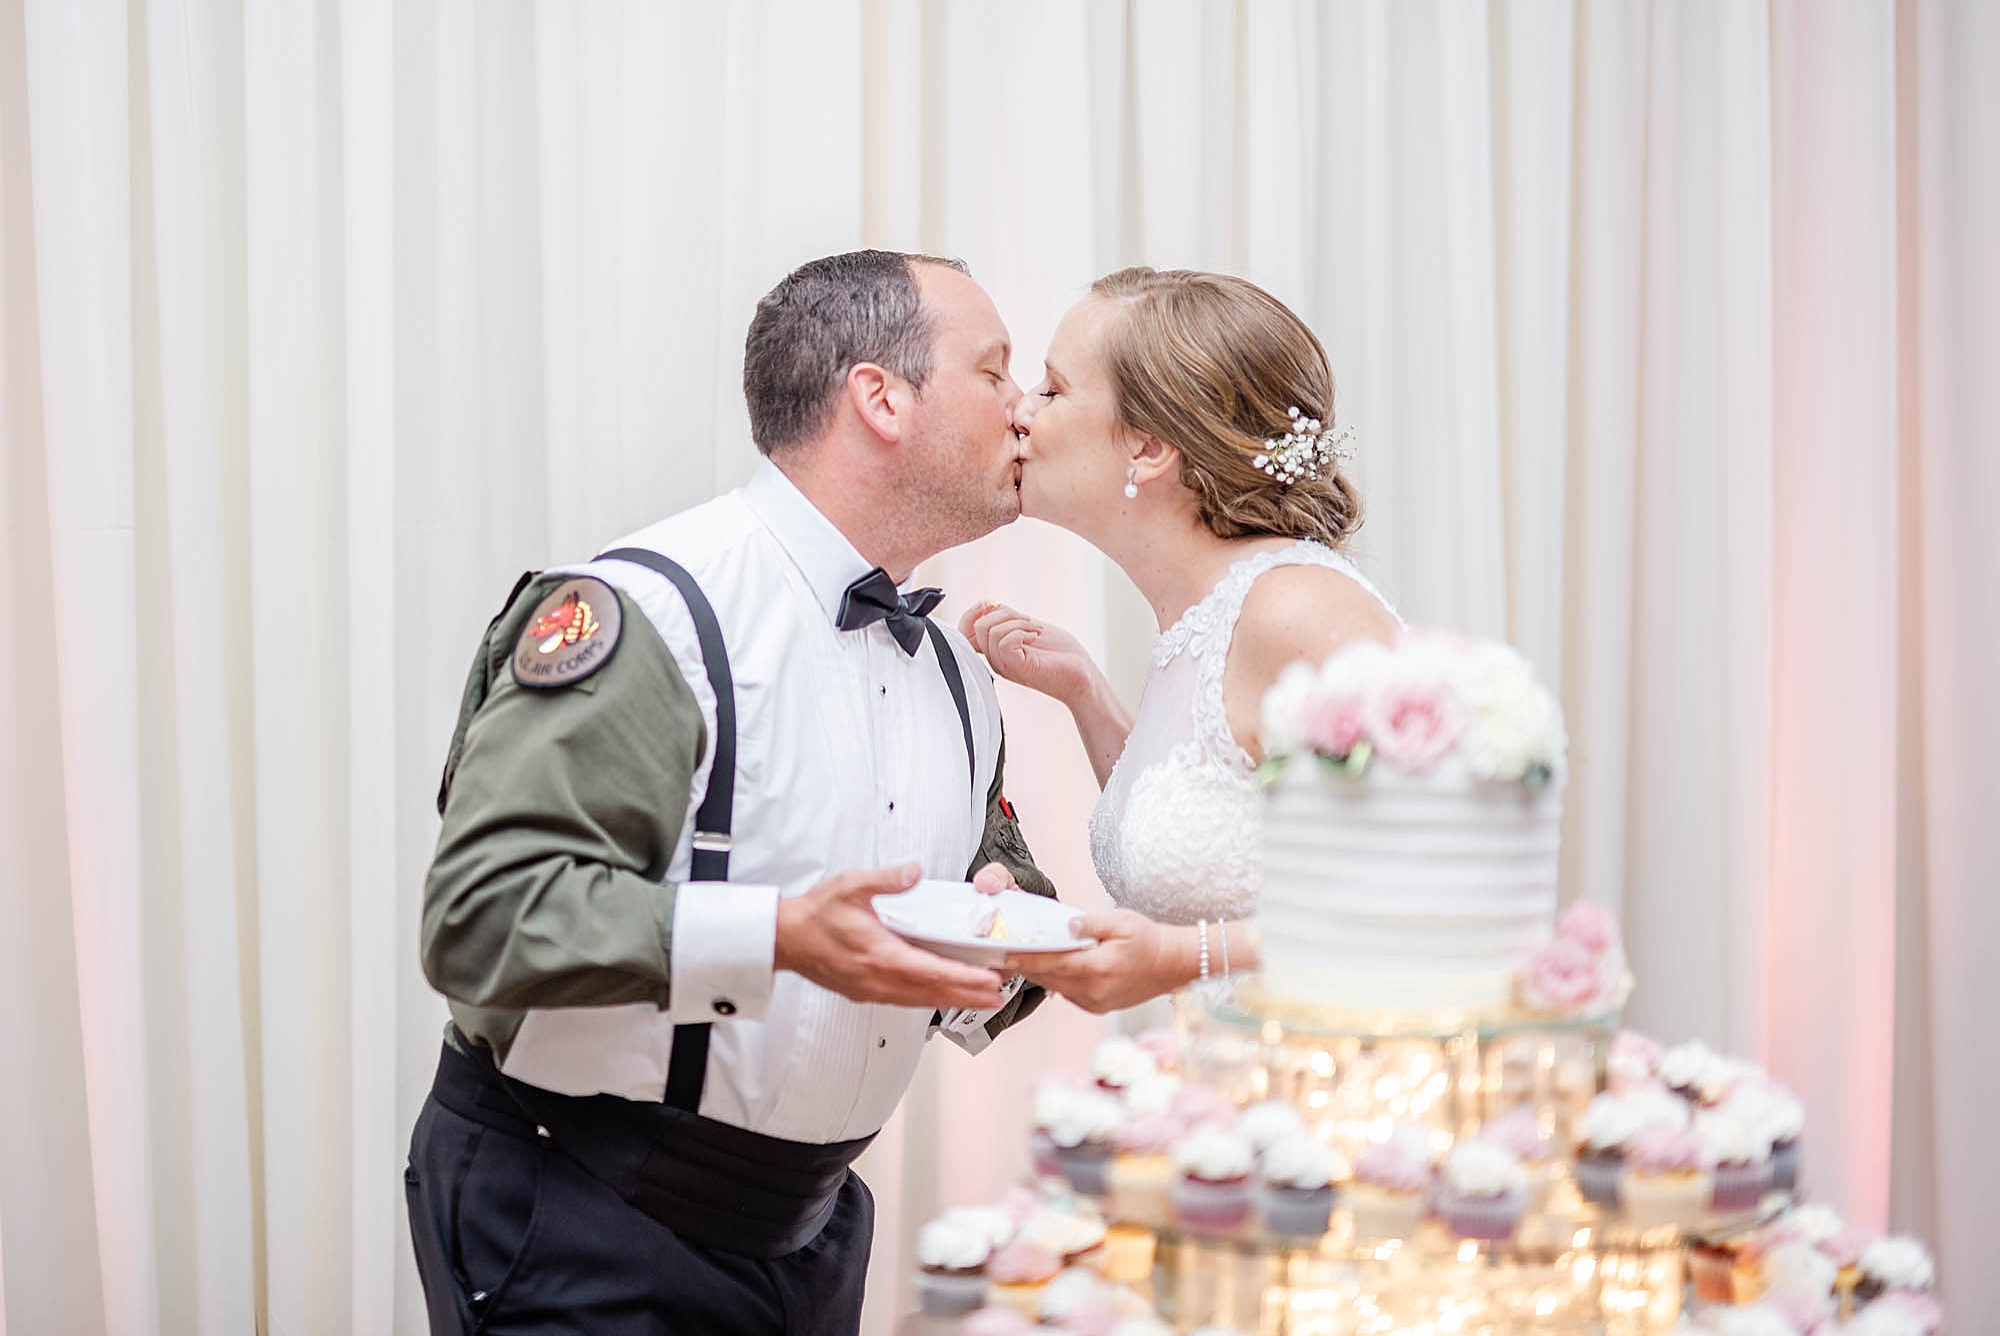 Ohio wedding reception with cake and newlyweds